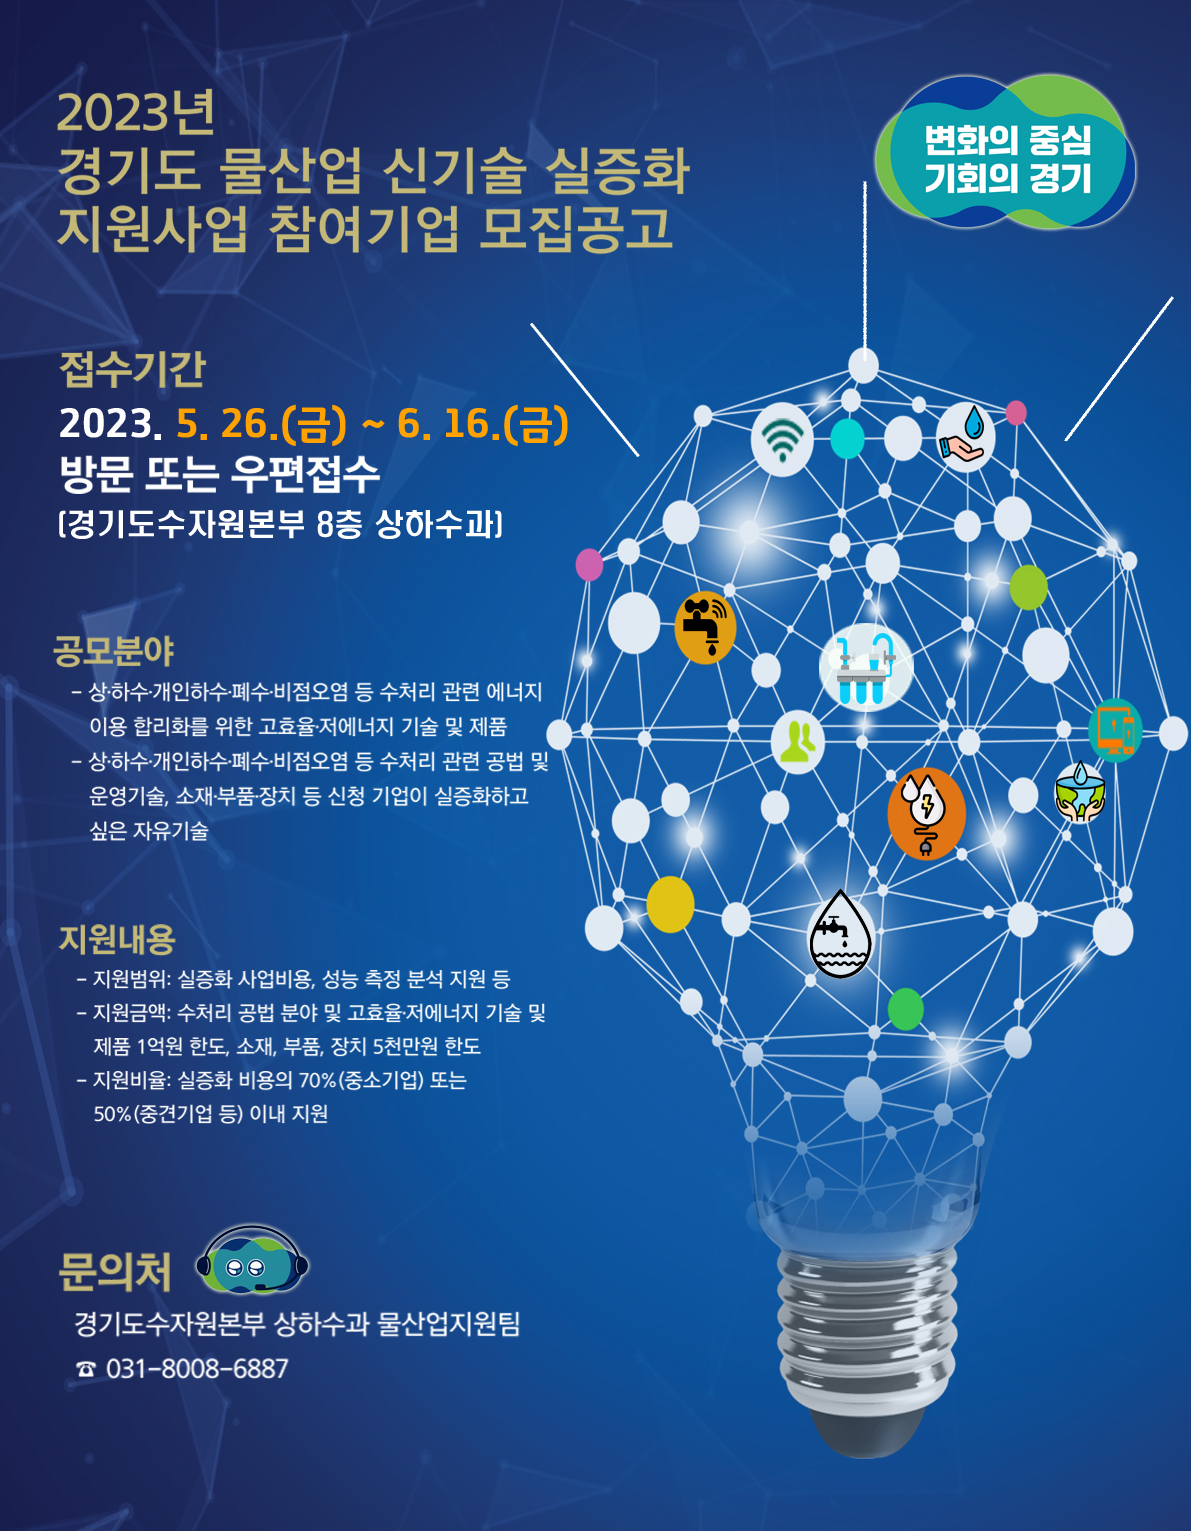 경기도 물산업 신기술 실증화 지원사업 참여기업 모집 공고(3차) 포스터